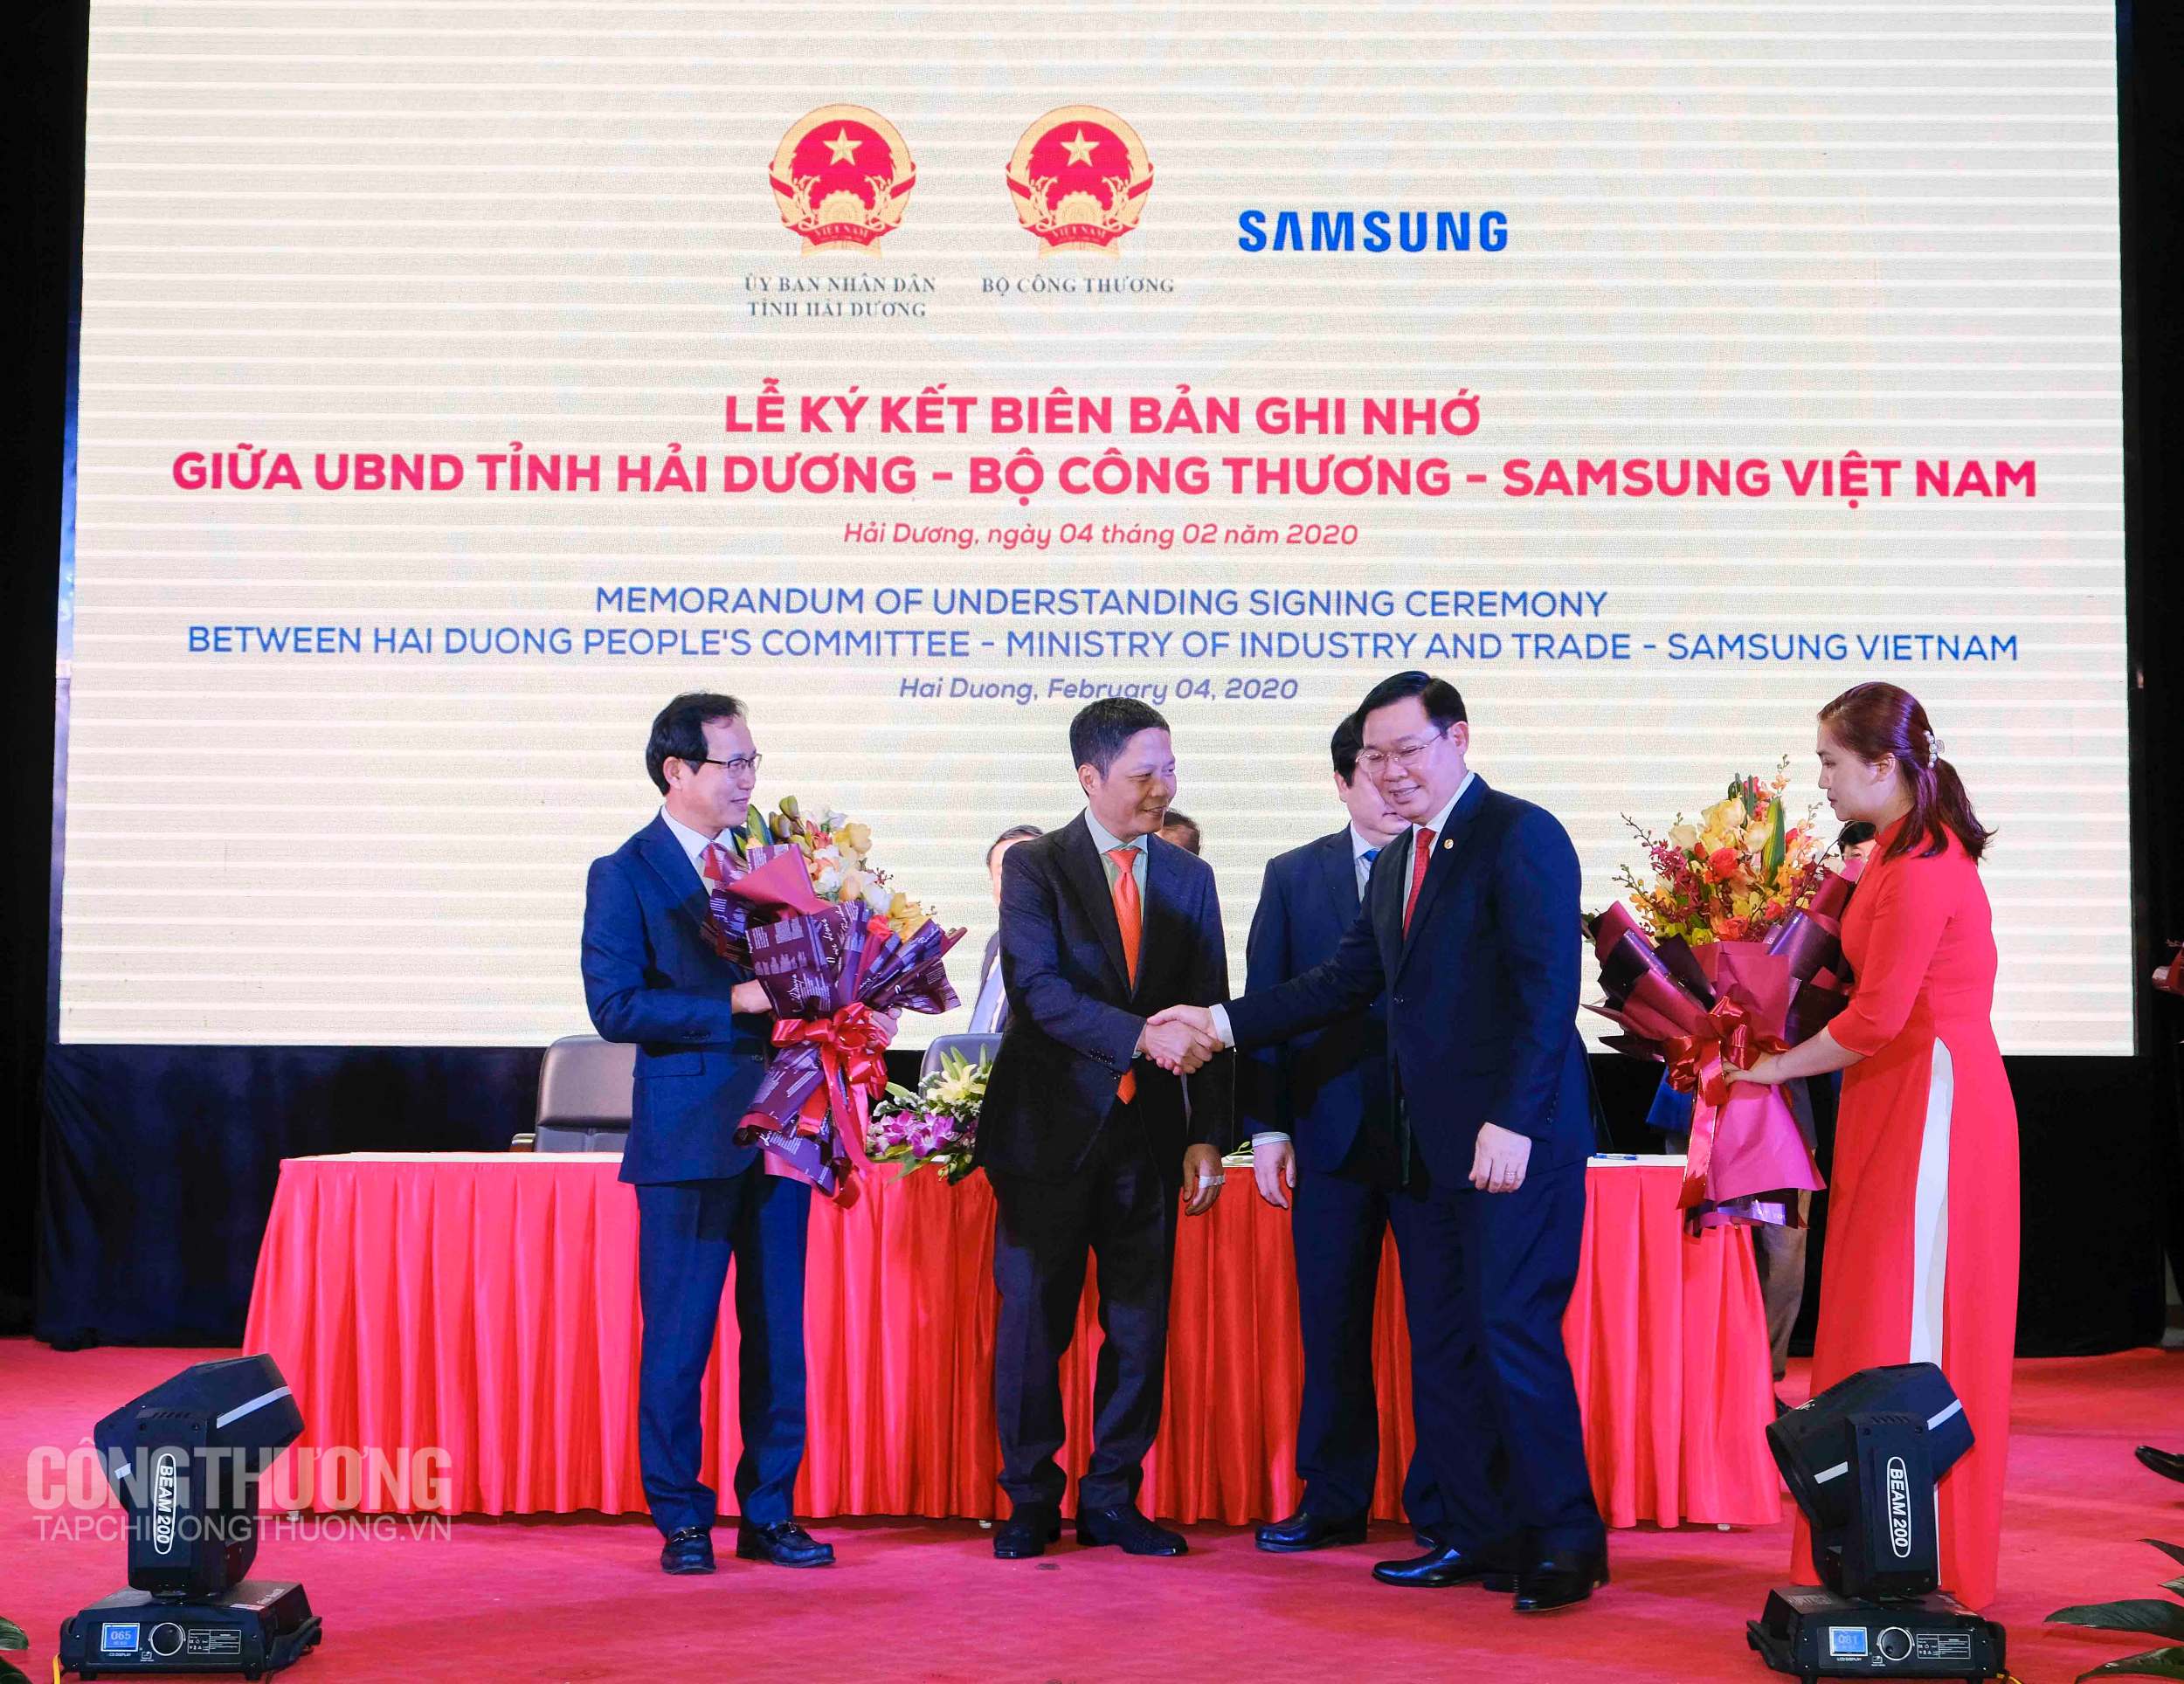 Phó Thủ tướng Vương Đình Huệ tặng hoa cho Bộ Công Thương, Samsung Việt Nam và tỉnh Hải Dương